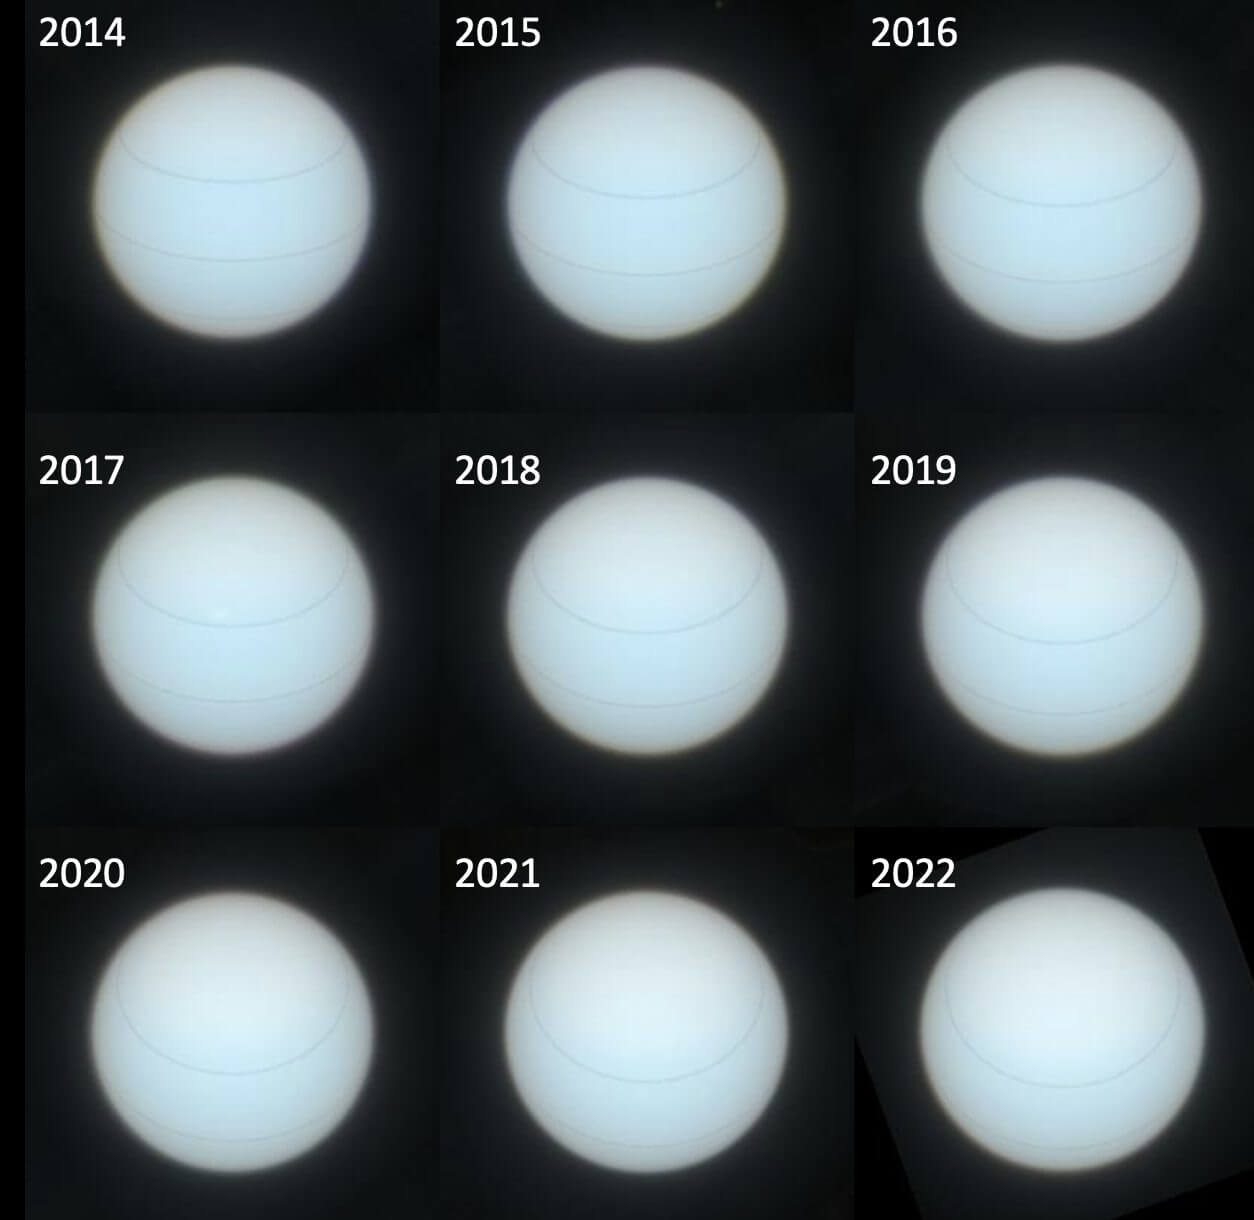 【▲図4: 2014年から2022年にかけてハッブル宇宙望遠鏡のWFC3によって取得された天王星の画像を、今回の研究を元に補正したもの。線は北緯35度、南緯35度、および赤道それぞれの緯度を表しています。赤道方向を見ている2014年と極地を見ている2022年の画像を比較すると、その色が違うことが分かります。 (Image Credit: Patrick Irwin, University of Oxford) 】